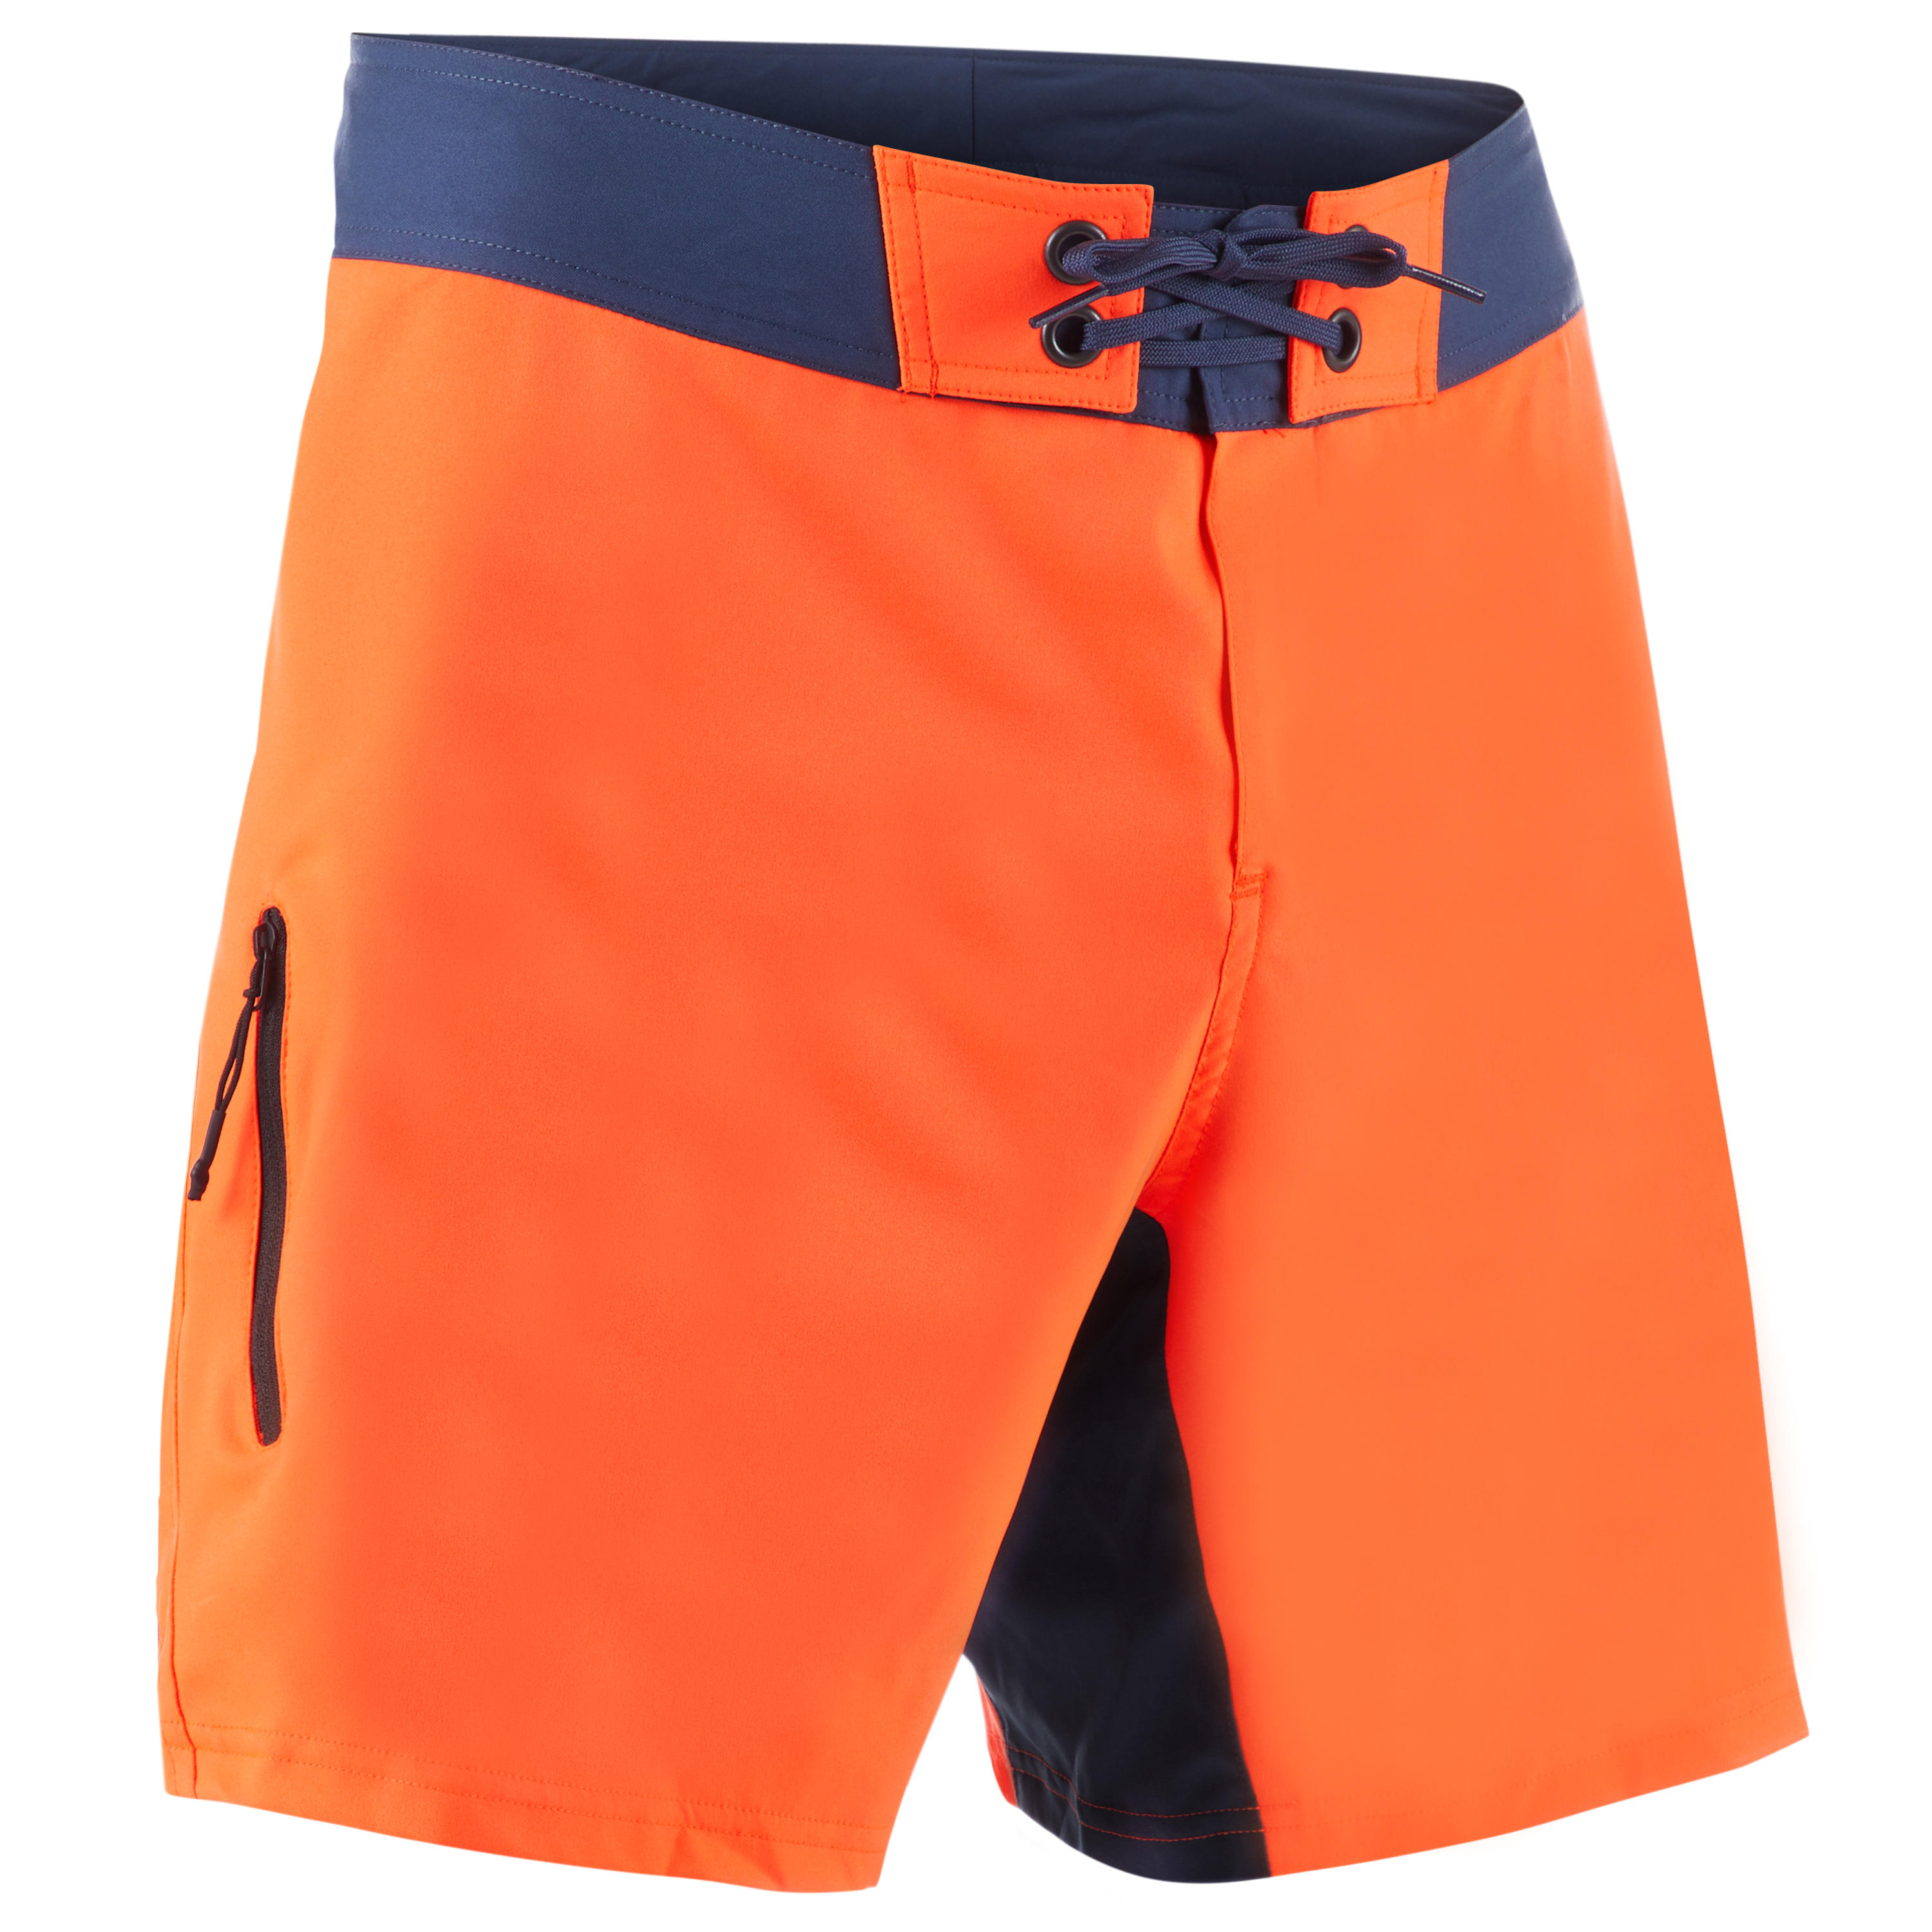 OLAIAN Boardshorts Surfen Herren kurz 500 uni orange S